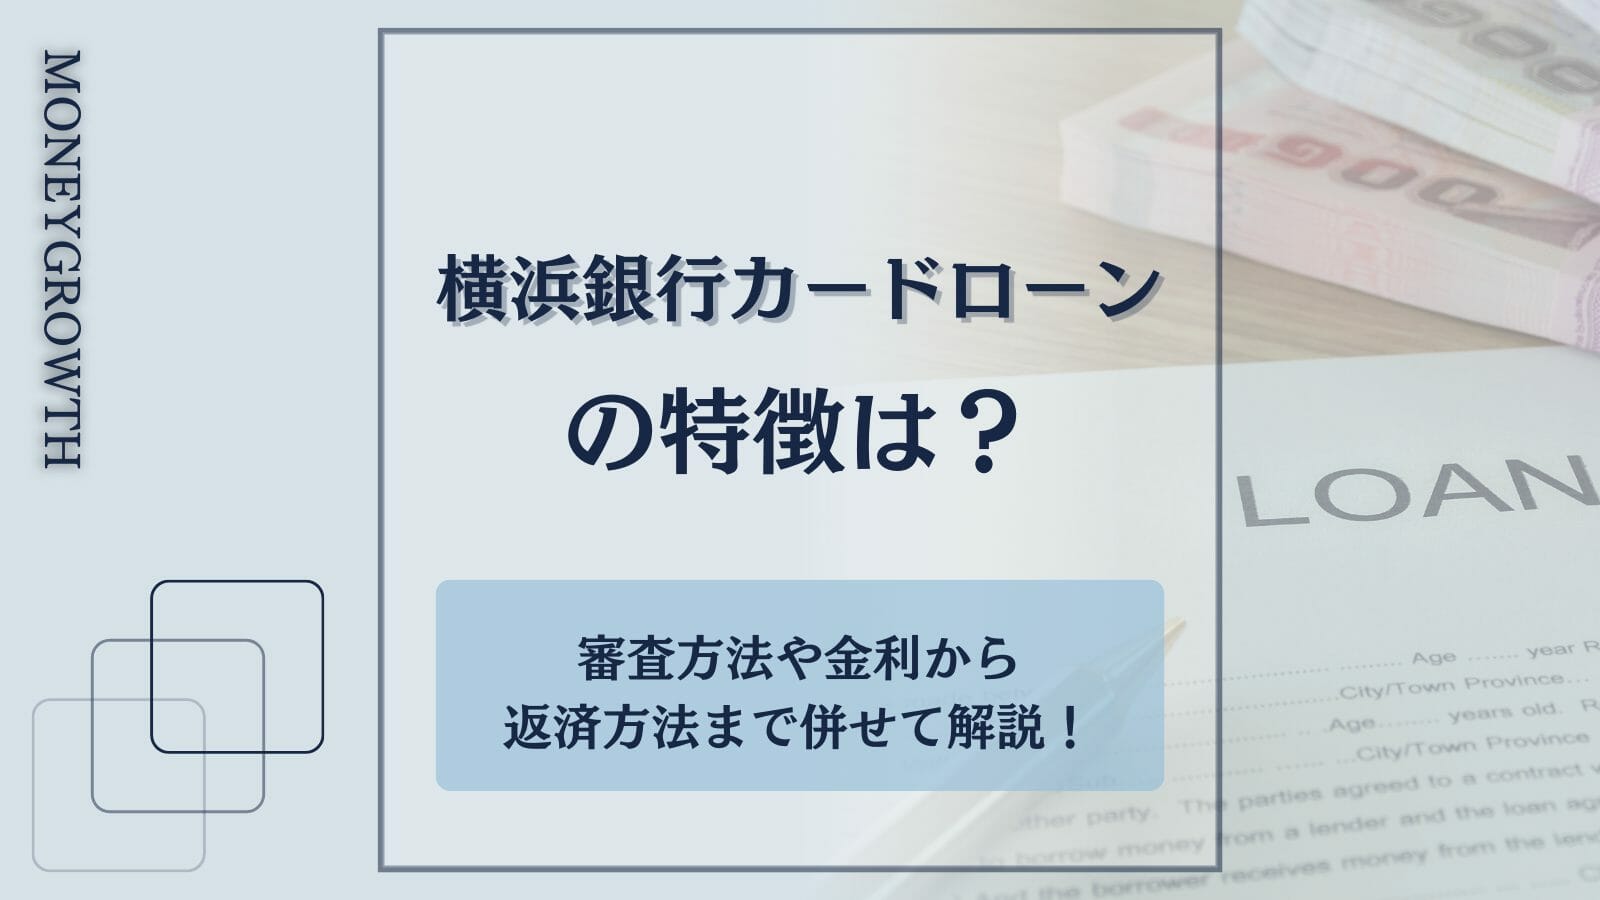 横浜銀行カードローンの特徴